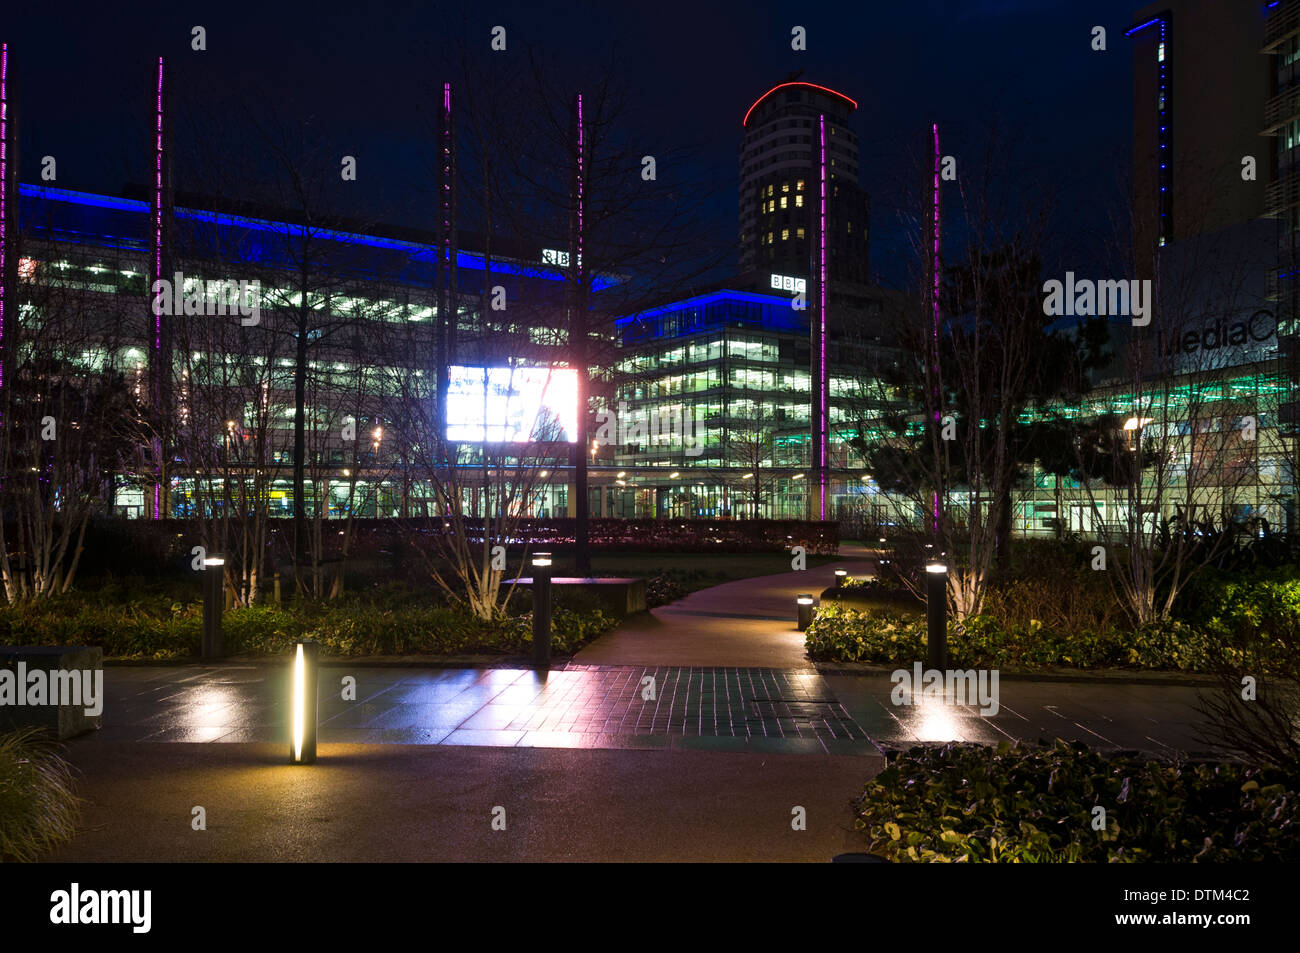 La place et le jardin à la nuit au complexe MediaCityUK, Salford Quays, Manchester, Angleterre, Royaume-Uni. Banque D'Images